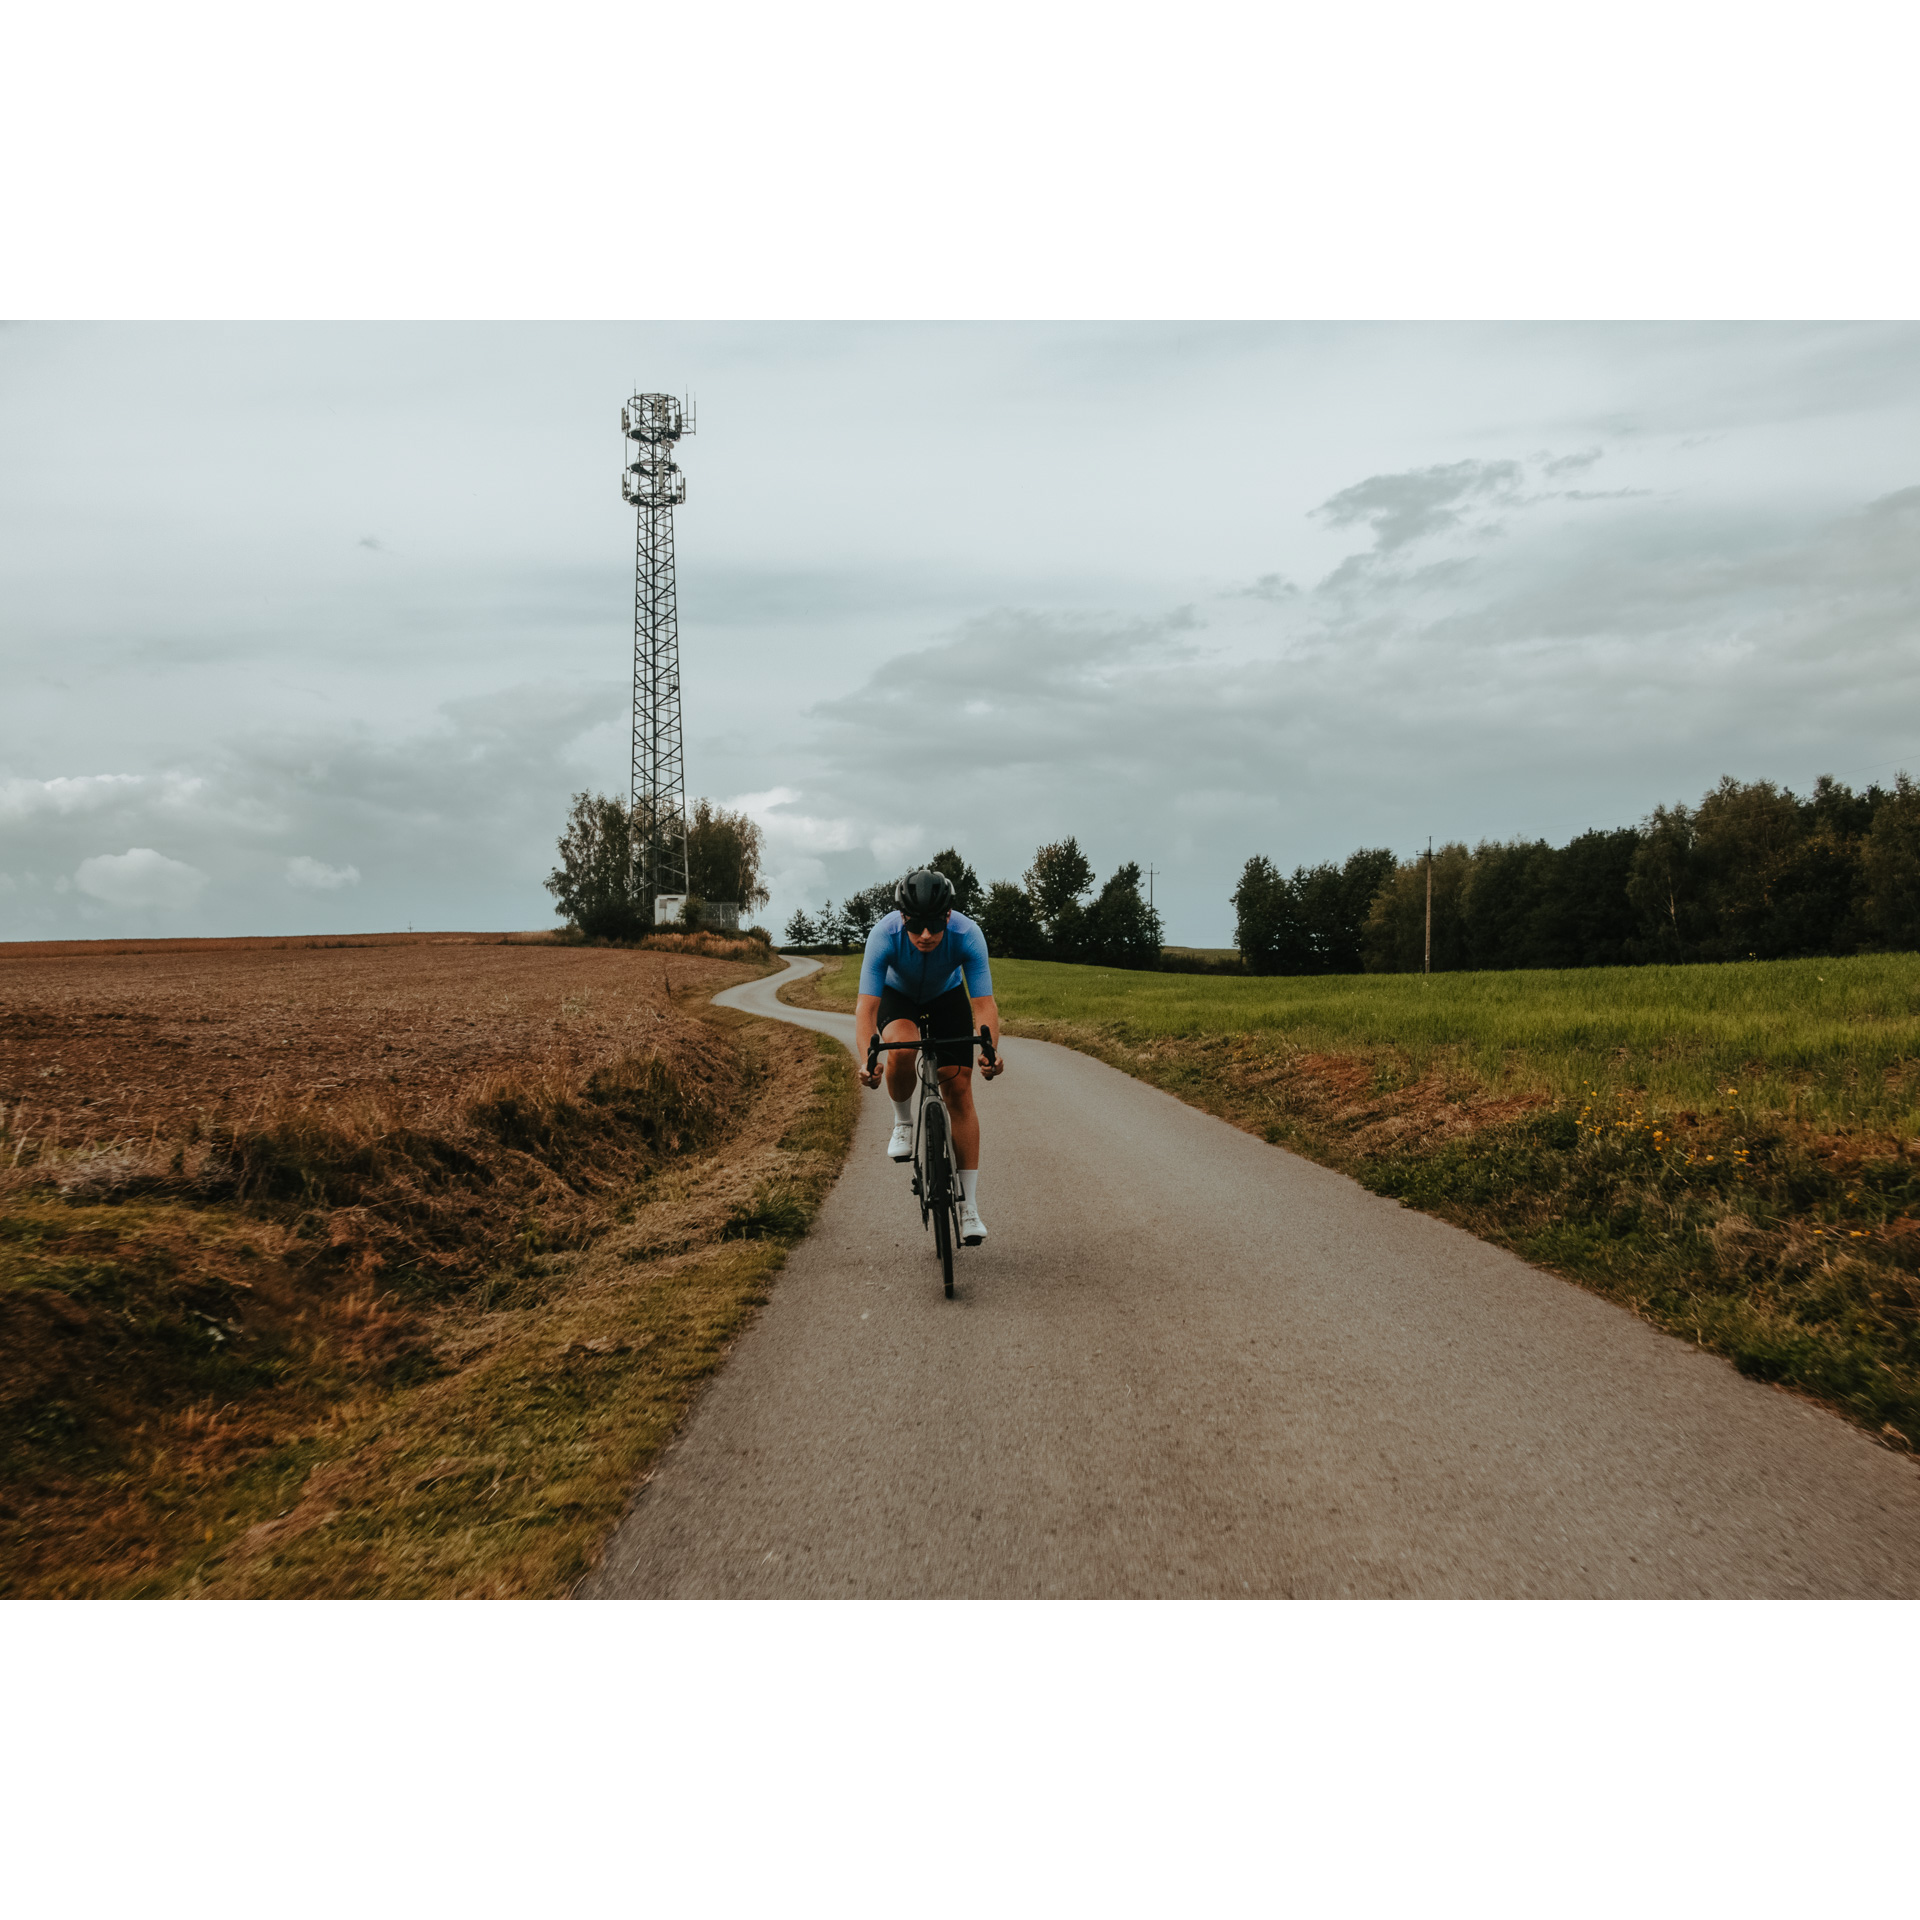 Rowerzysta w niebiesko-czarnym stroju kolarskim kasku i okularach jadący rowerem asfaltową drogą wśród łąk i pól, w tle drzewa, szare niebo i wysoki słup elektryczny